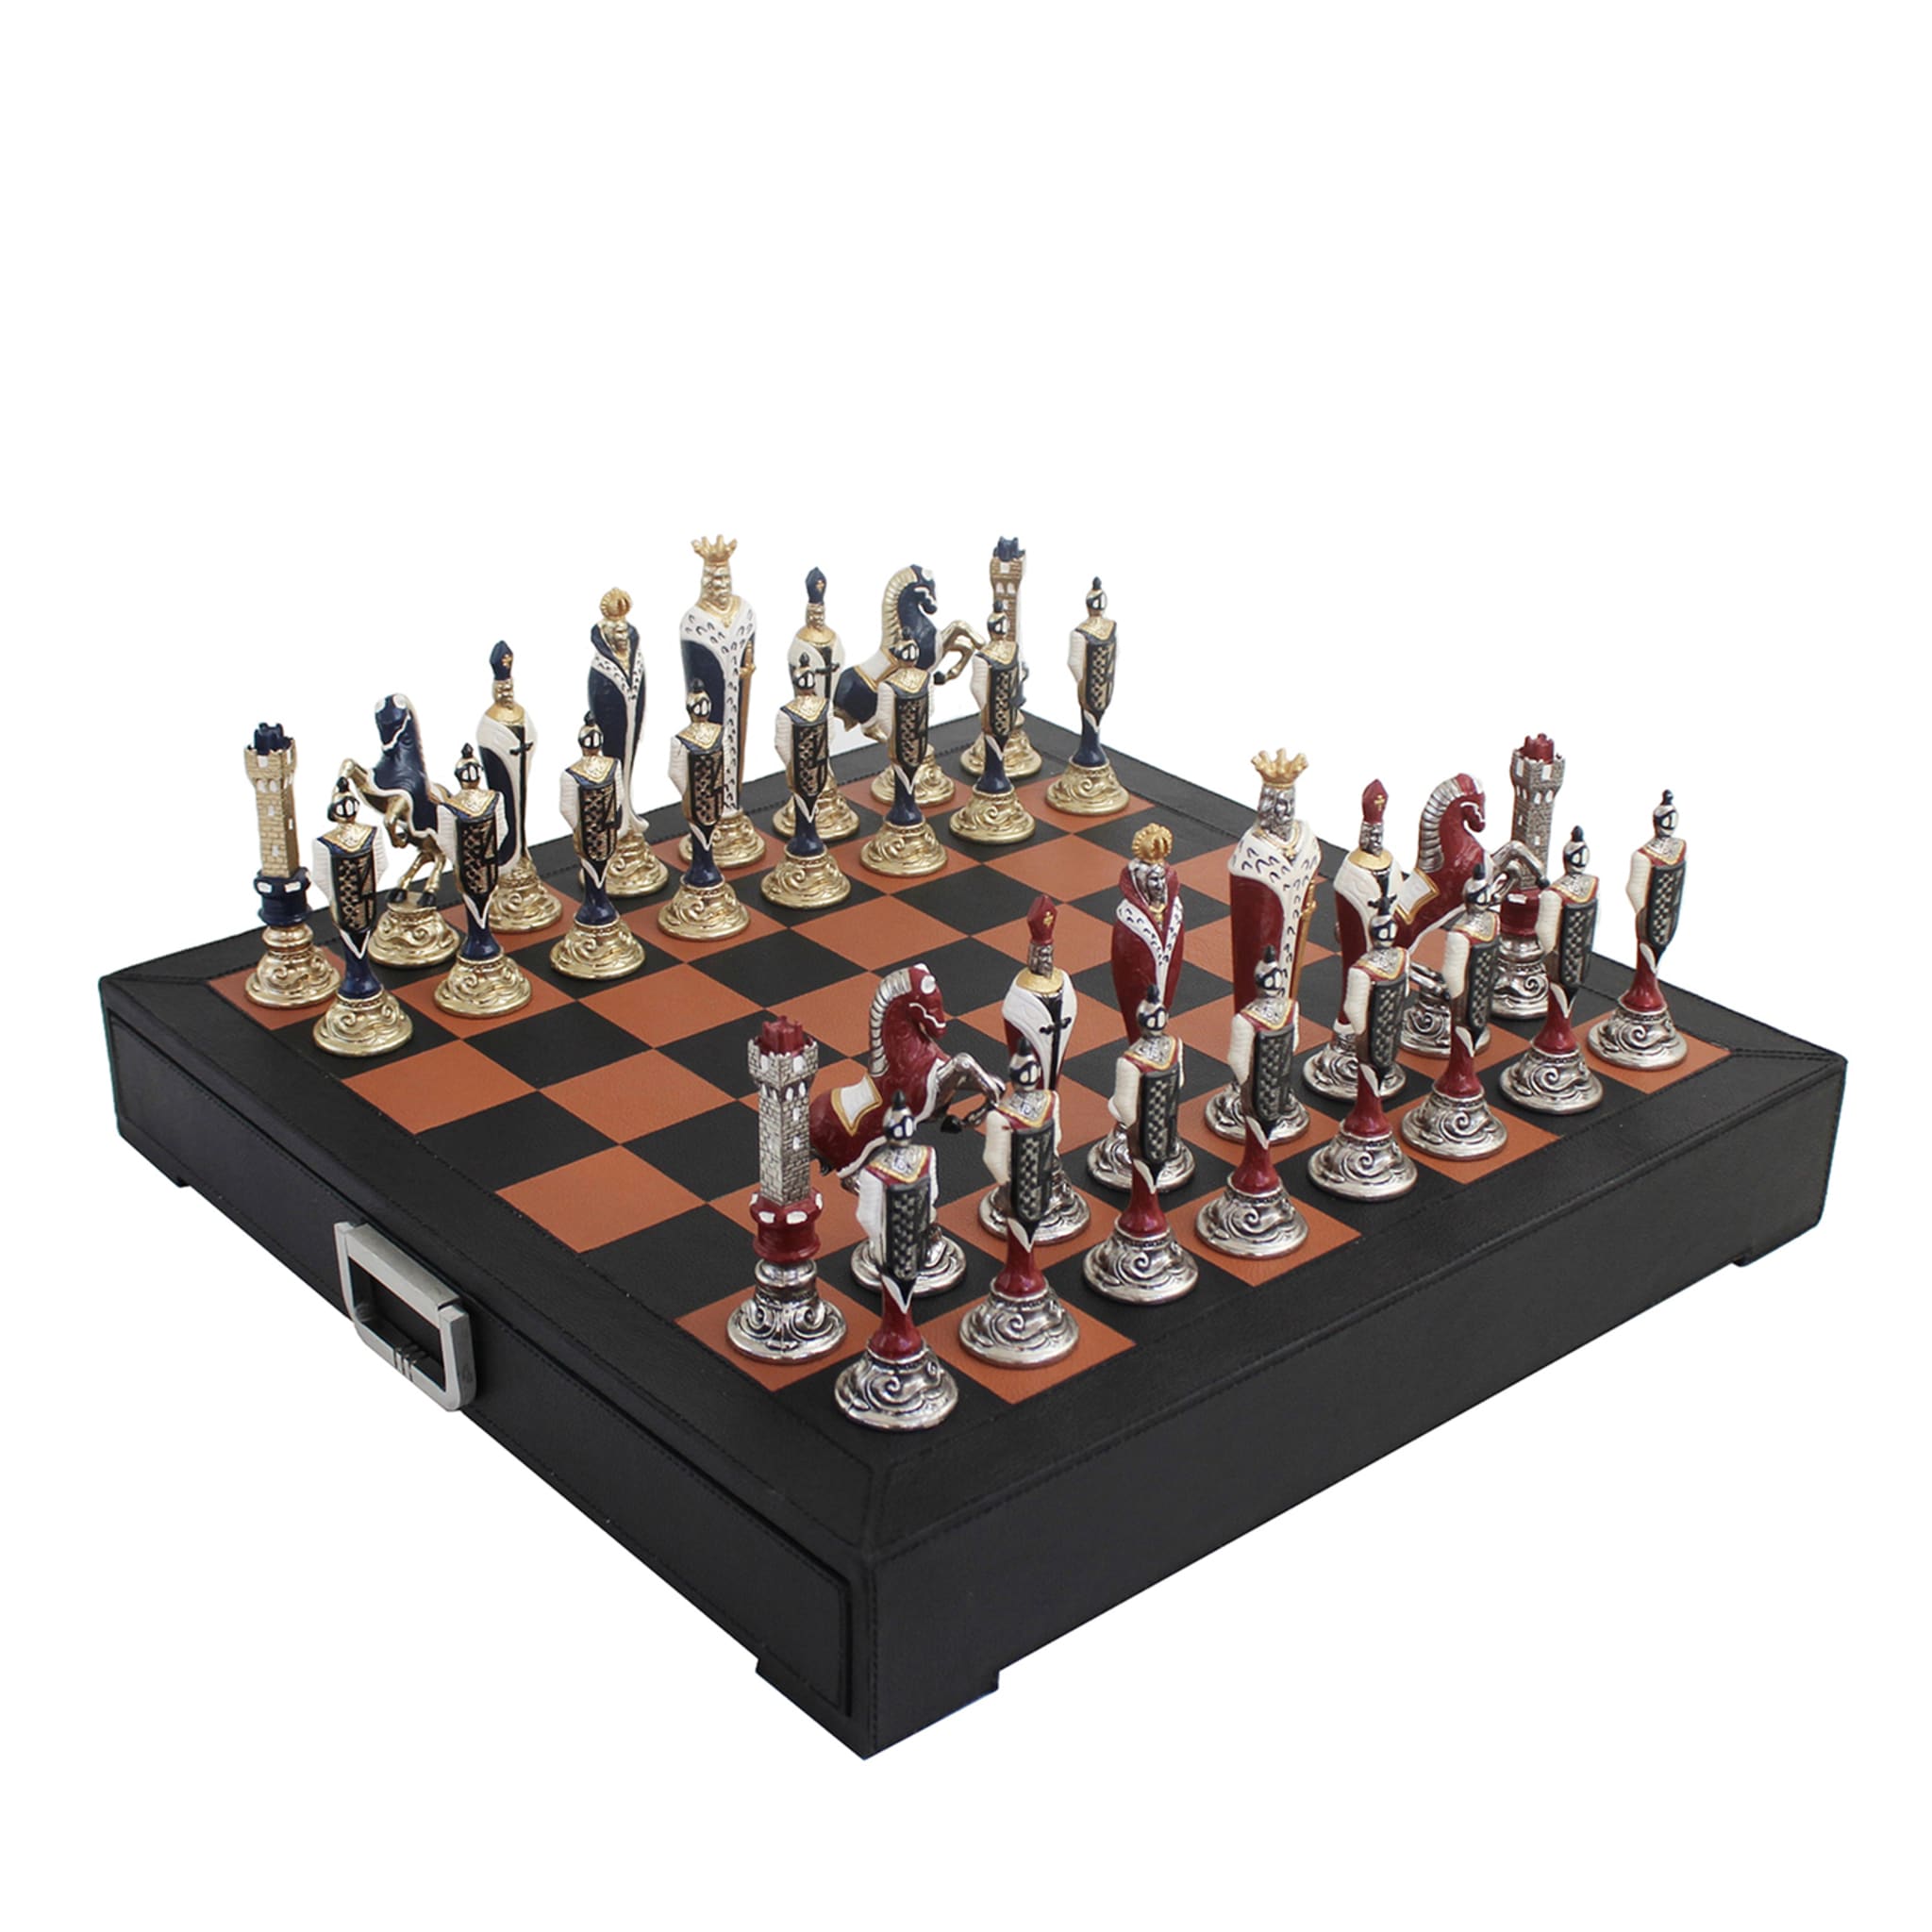 Juego de ajedrez Rinascimento Fiorentino - Vista principal